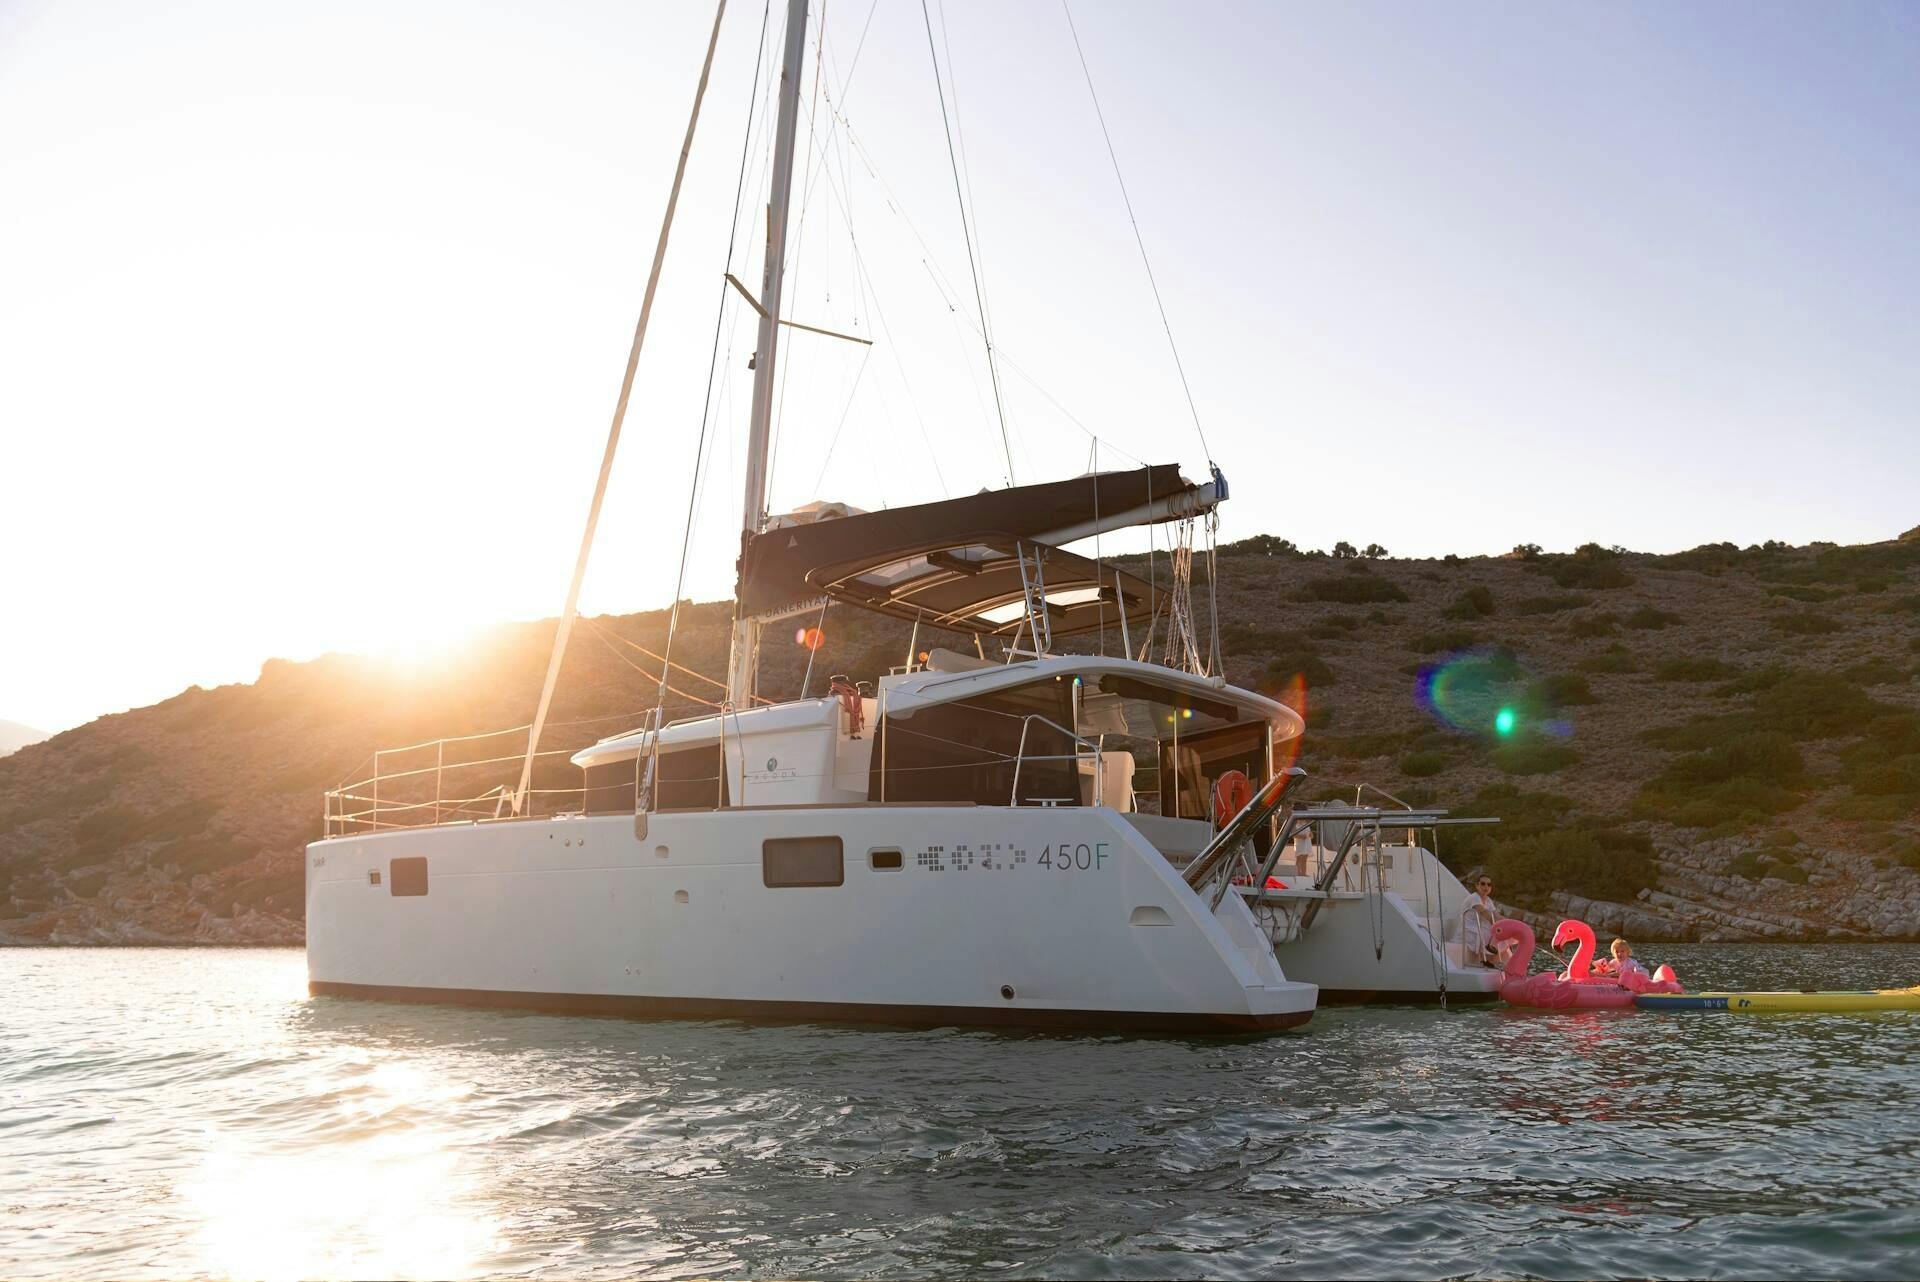 Premium Catamaran Cruise from Rethymnon